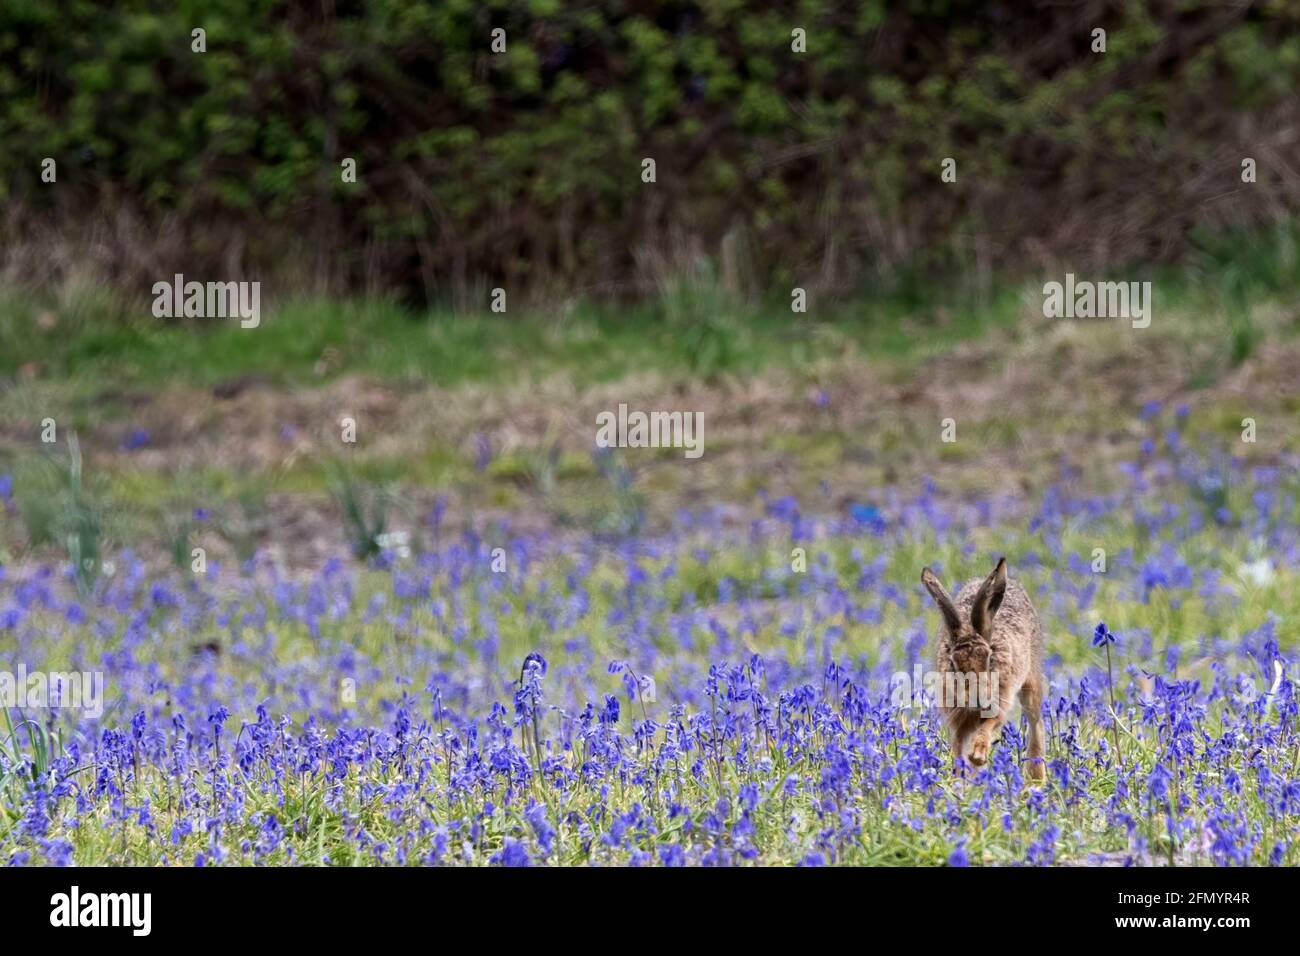 Ein europäischer Hase, Lepus europaeus, der durch ein Feld englischer Bluebells läuft, Hyacinthoides non-scripta. Stockfoto